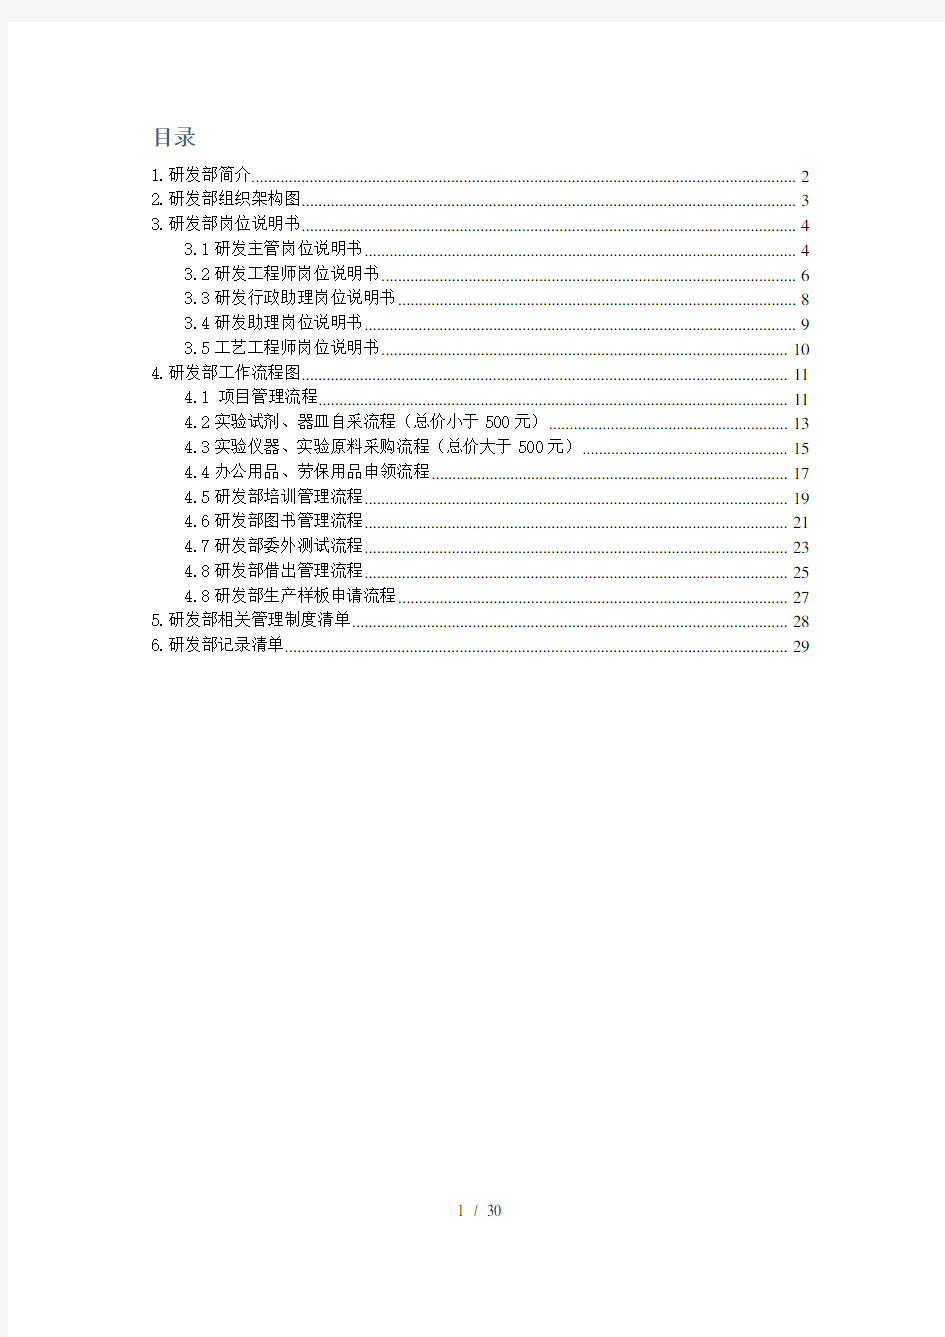 研发部工作手册-9.8